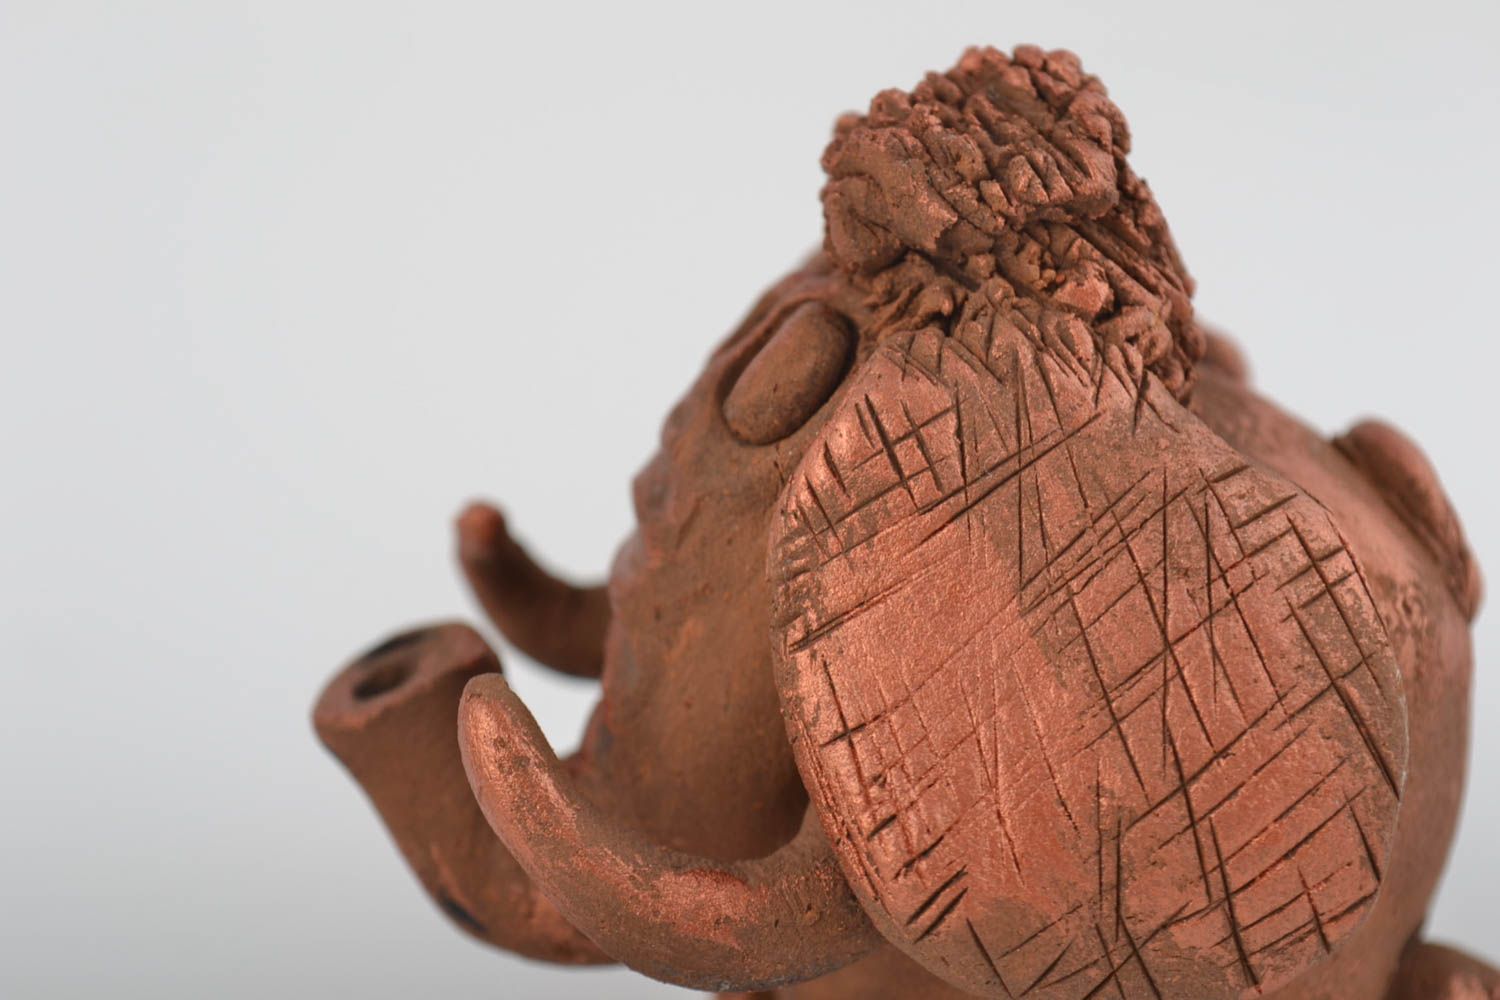 Декоративная глиняная фигурка в виде слоника расписанного акрилом ручной работы фото 4